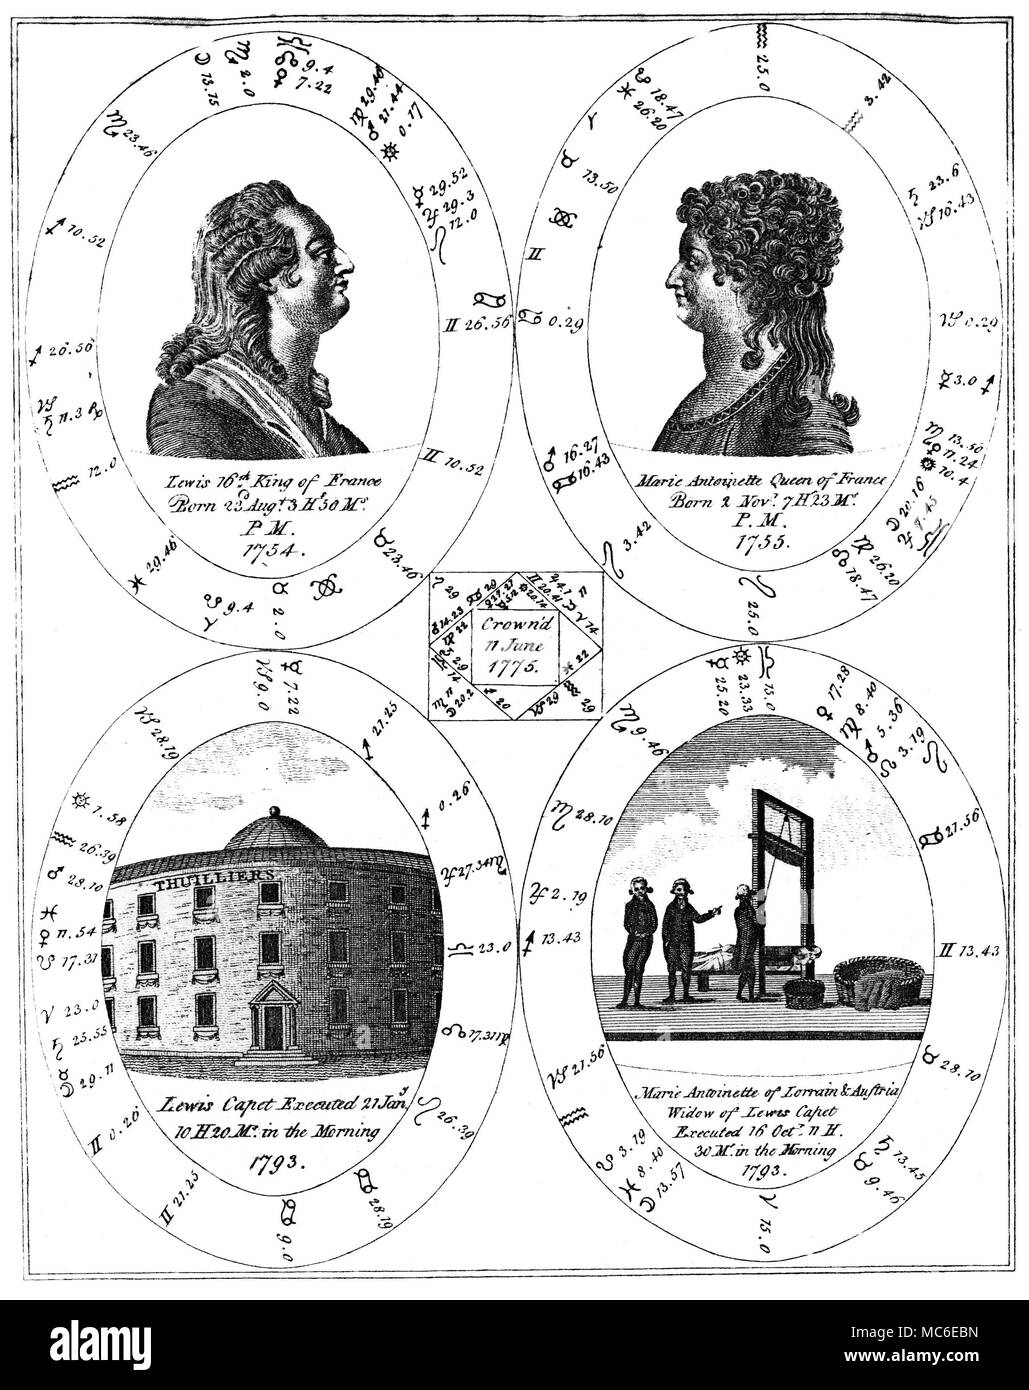 HOROSCOPES GRATUITS - MARIE ANTOINETTE ET LOUIS XVI un système sophistiqué de cuivre, contenant cinq horoscopes liés, d'Ebenezer éventuellement, une nouvelle illustration de la Sciences Occultes : ou l'Art de la prédiction d'événements futurs et éventualités... 179... Louis XVI est né le 23 août 1754 : comme le montre le graphique ci-dessous, il a été exécuté le 21 janvier 1793. Sa femme, Marie Antoinette, est né le 2 novembre 1755, et (comme c'est évident depuis le tableau ci-dessous, avec l'angoissant détail de la guillotine), elle a été executted le 16 octobre 1793. La petite place centrale horoscope est cast pour le moment Banque D'Images